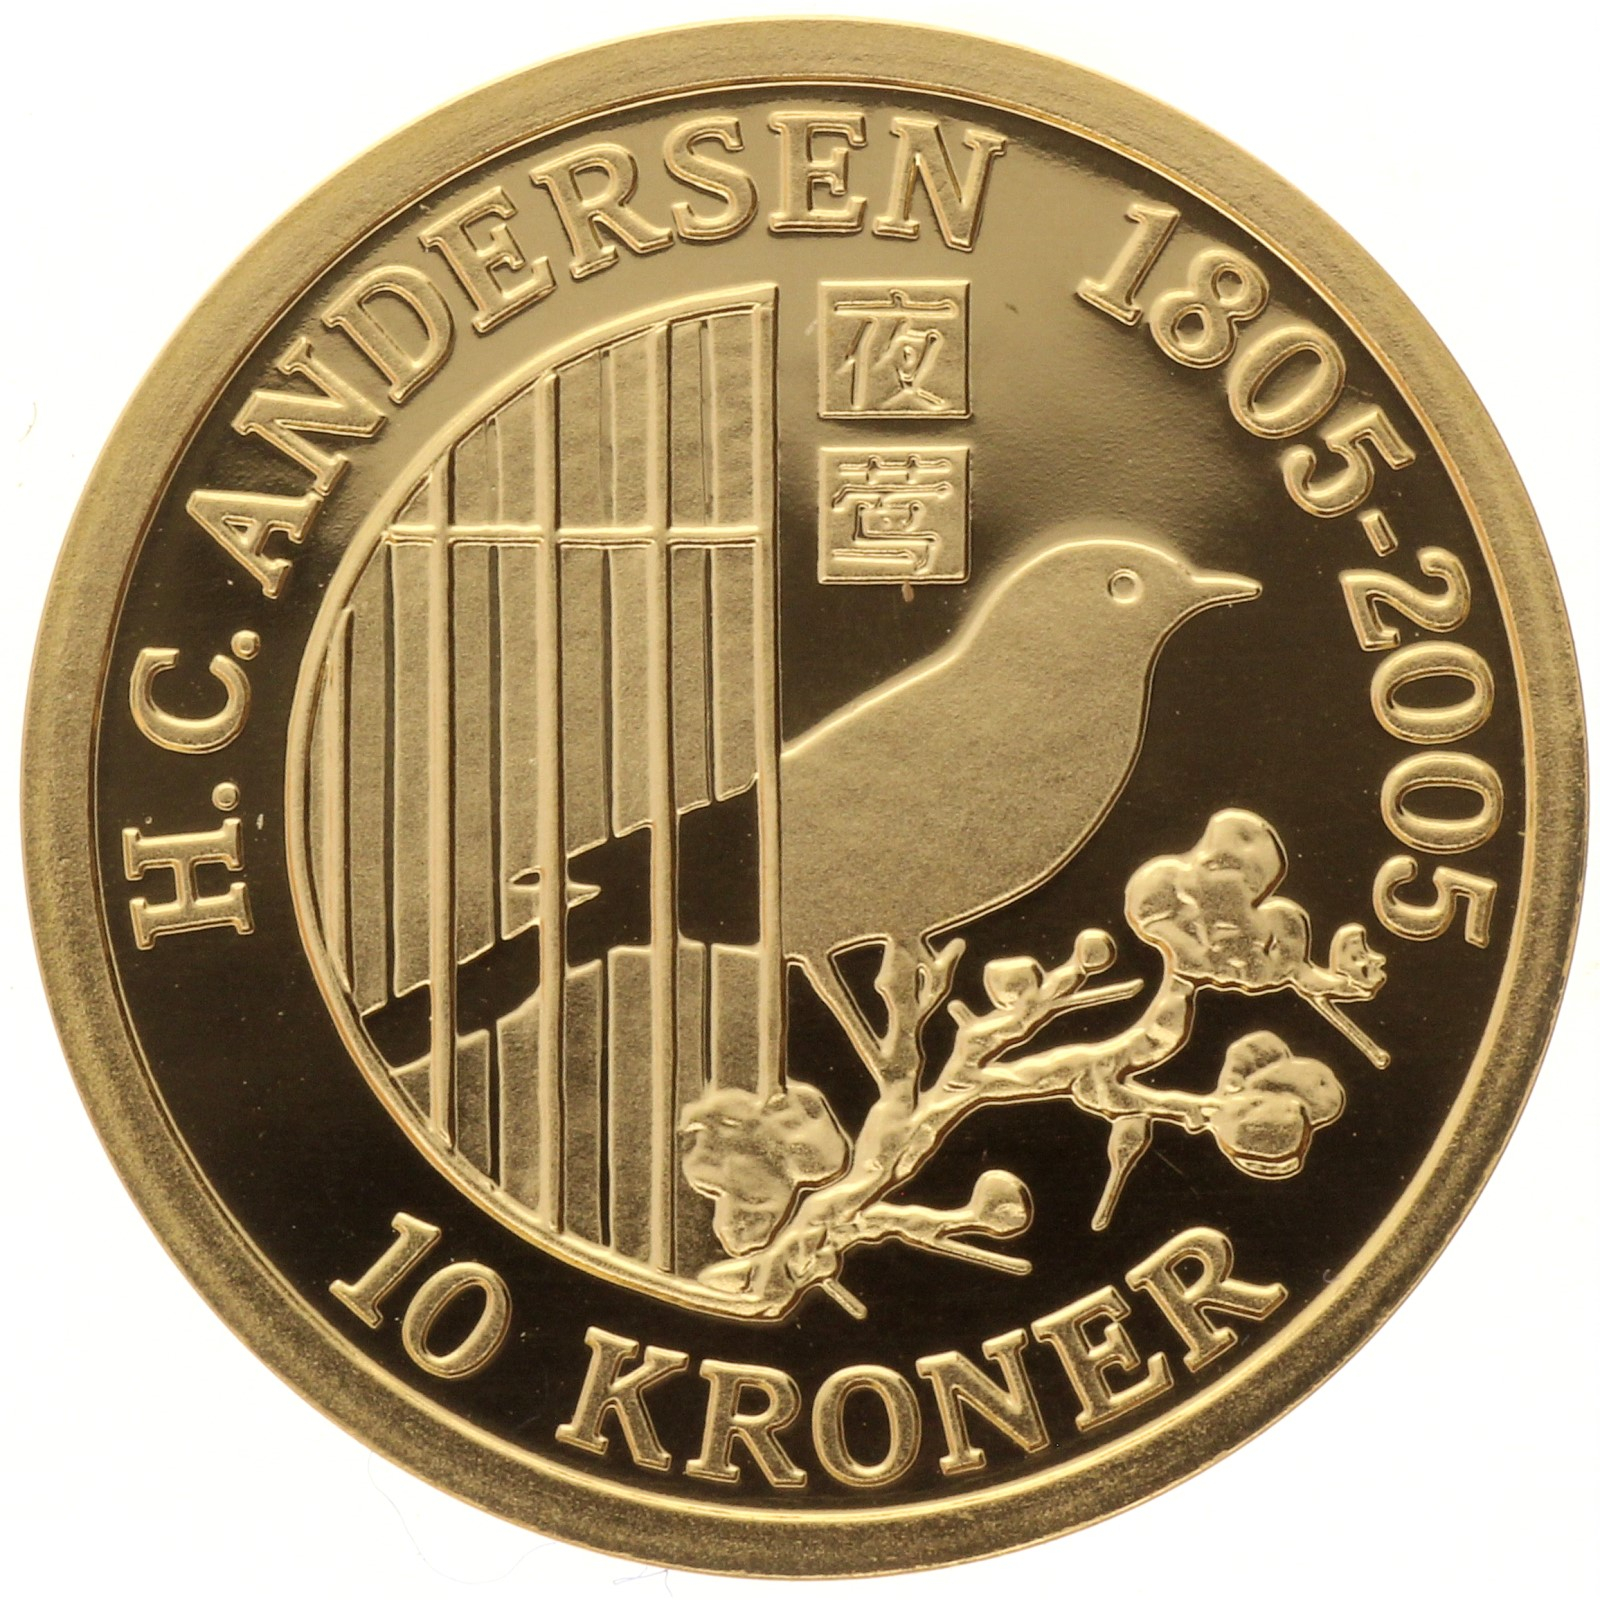 Denmark - 10 kroner - 2007 - Margrethe II - The Nightingale - 1/4oz